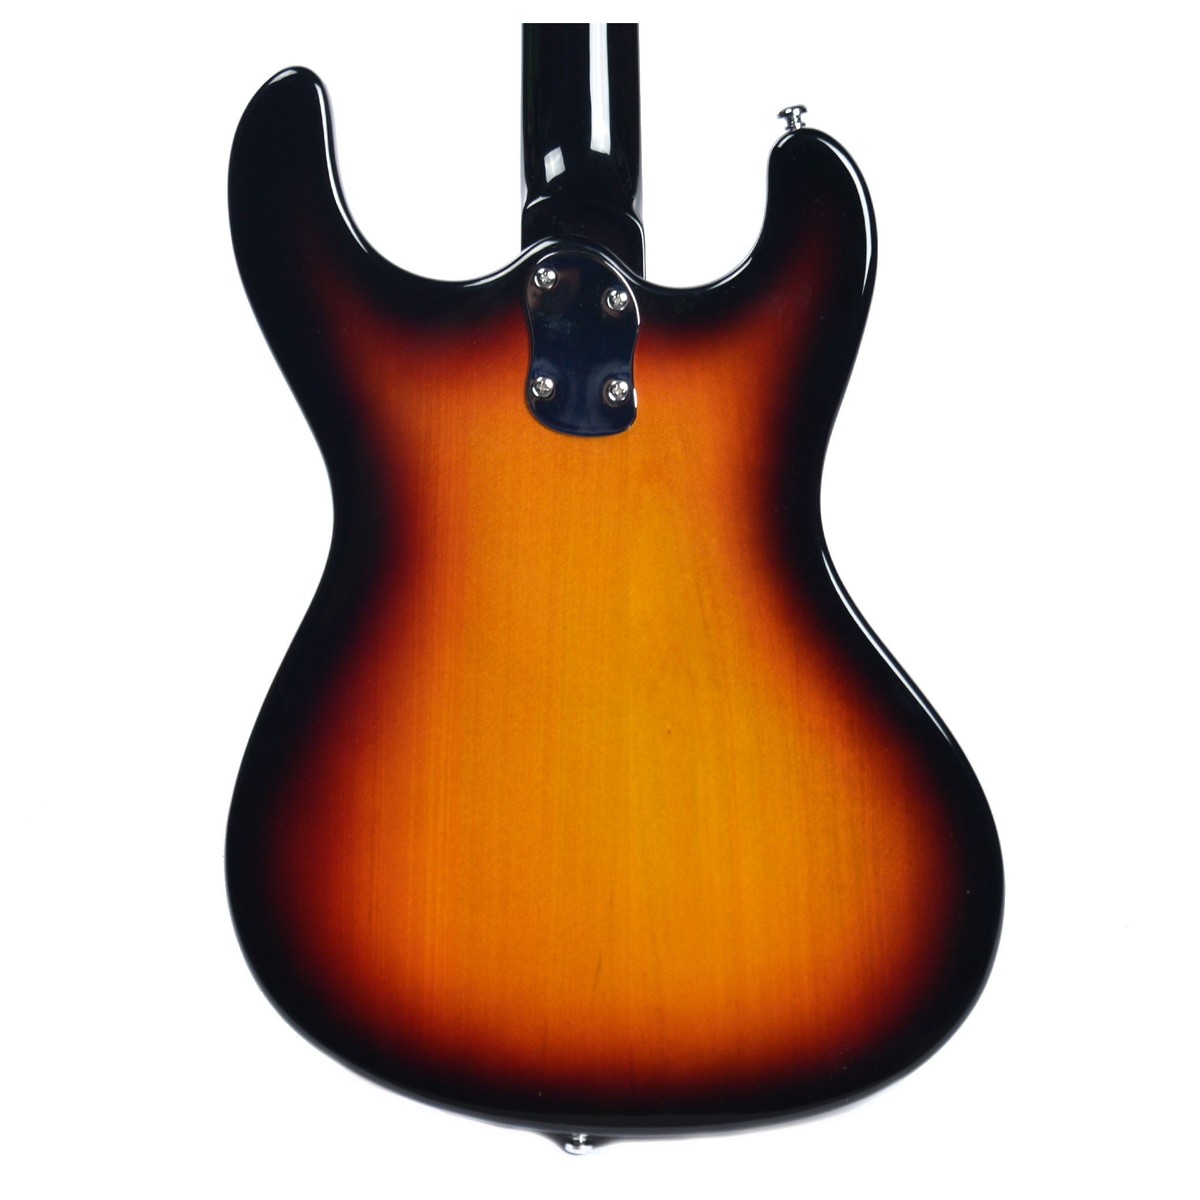 Danelectro The 64 Guitar Hs Trem Rw - Sunburst - Guitarra eléctrica de doble corte. - Variation 3